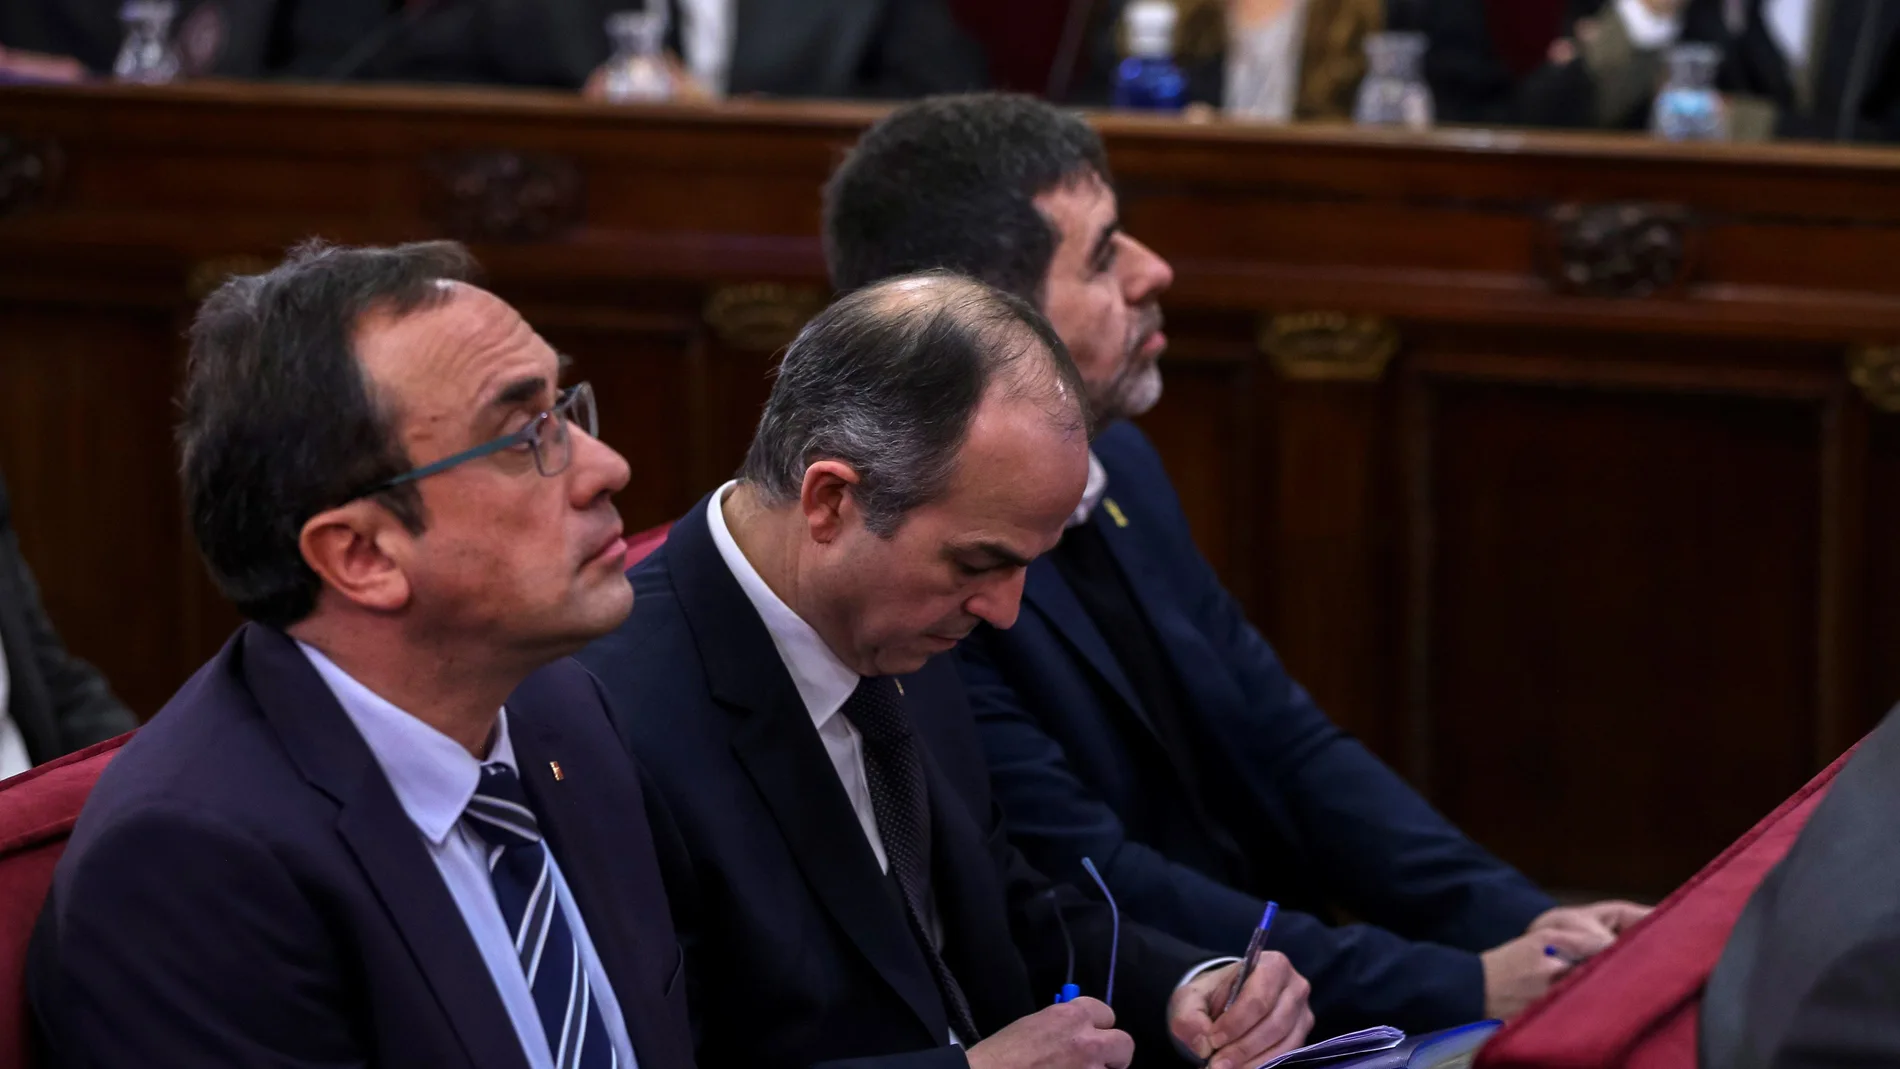 Los procesados en el juicio del 'procés', Josep Rull, Jordi Turull y Jordi Sánchez